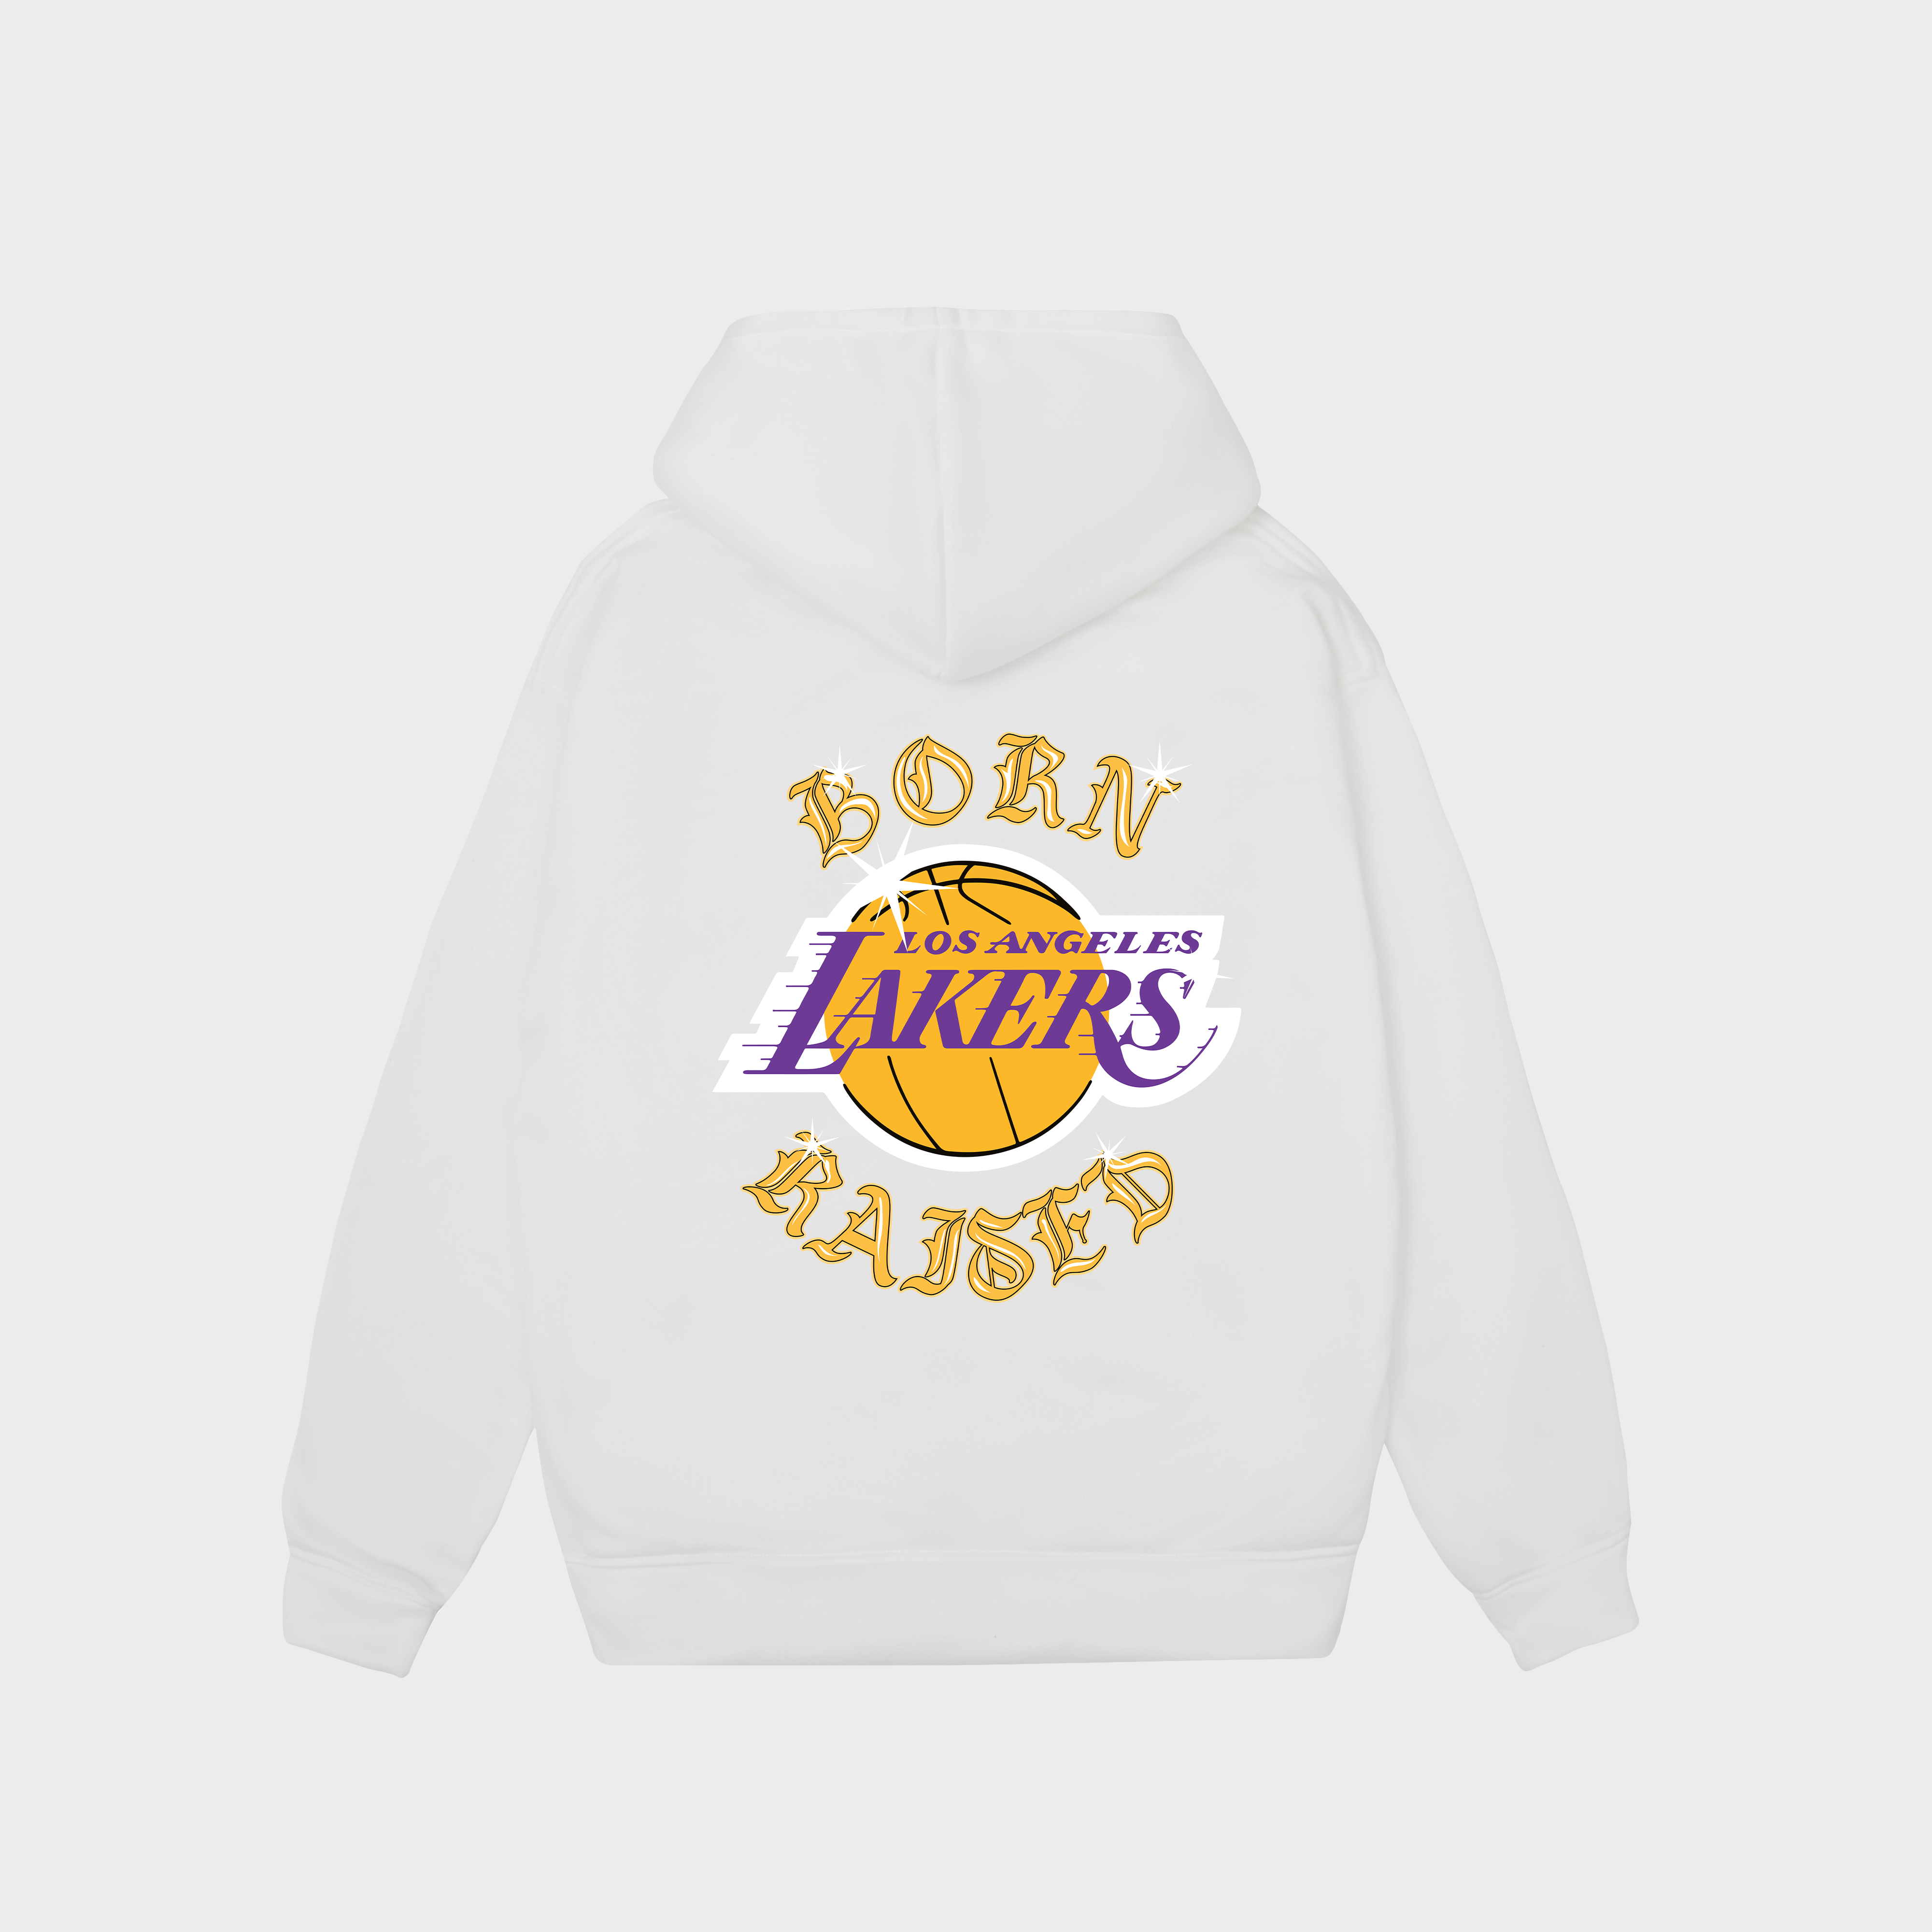 NBA Los Angeles Lakers Hoodie